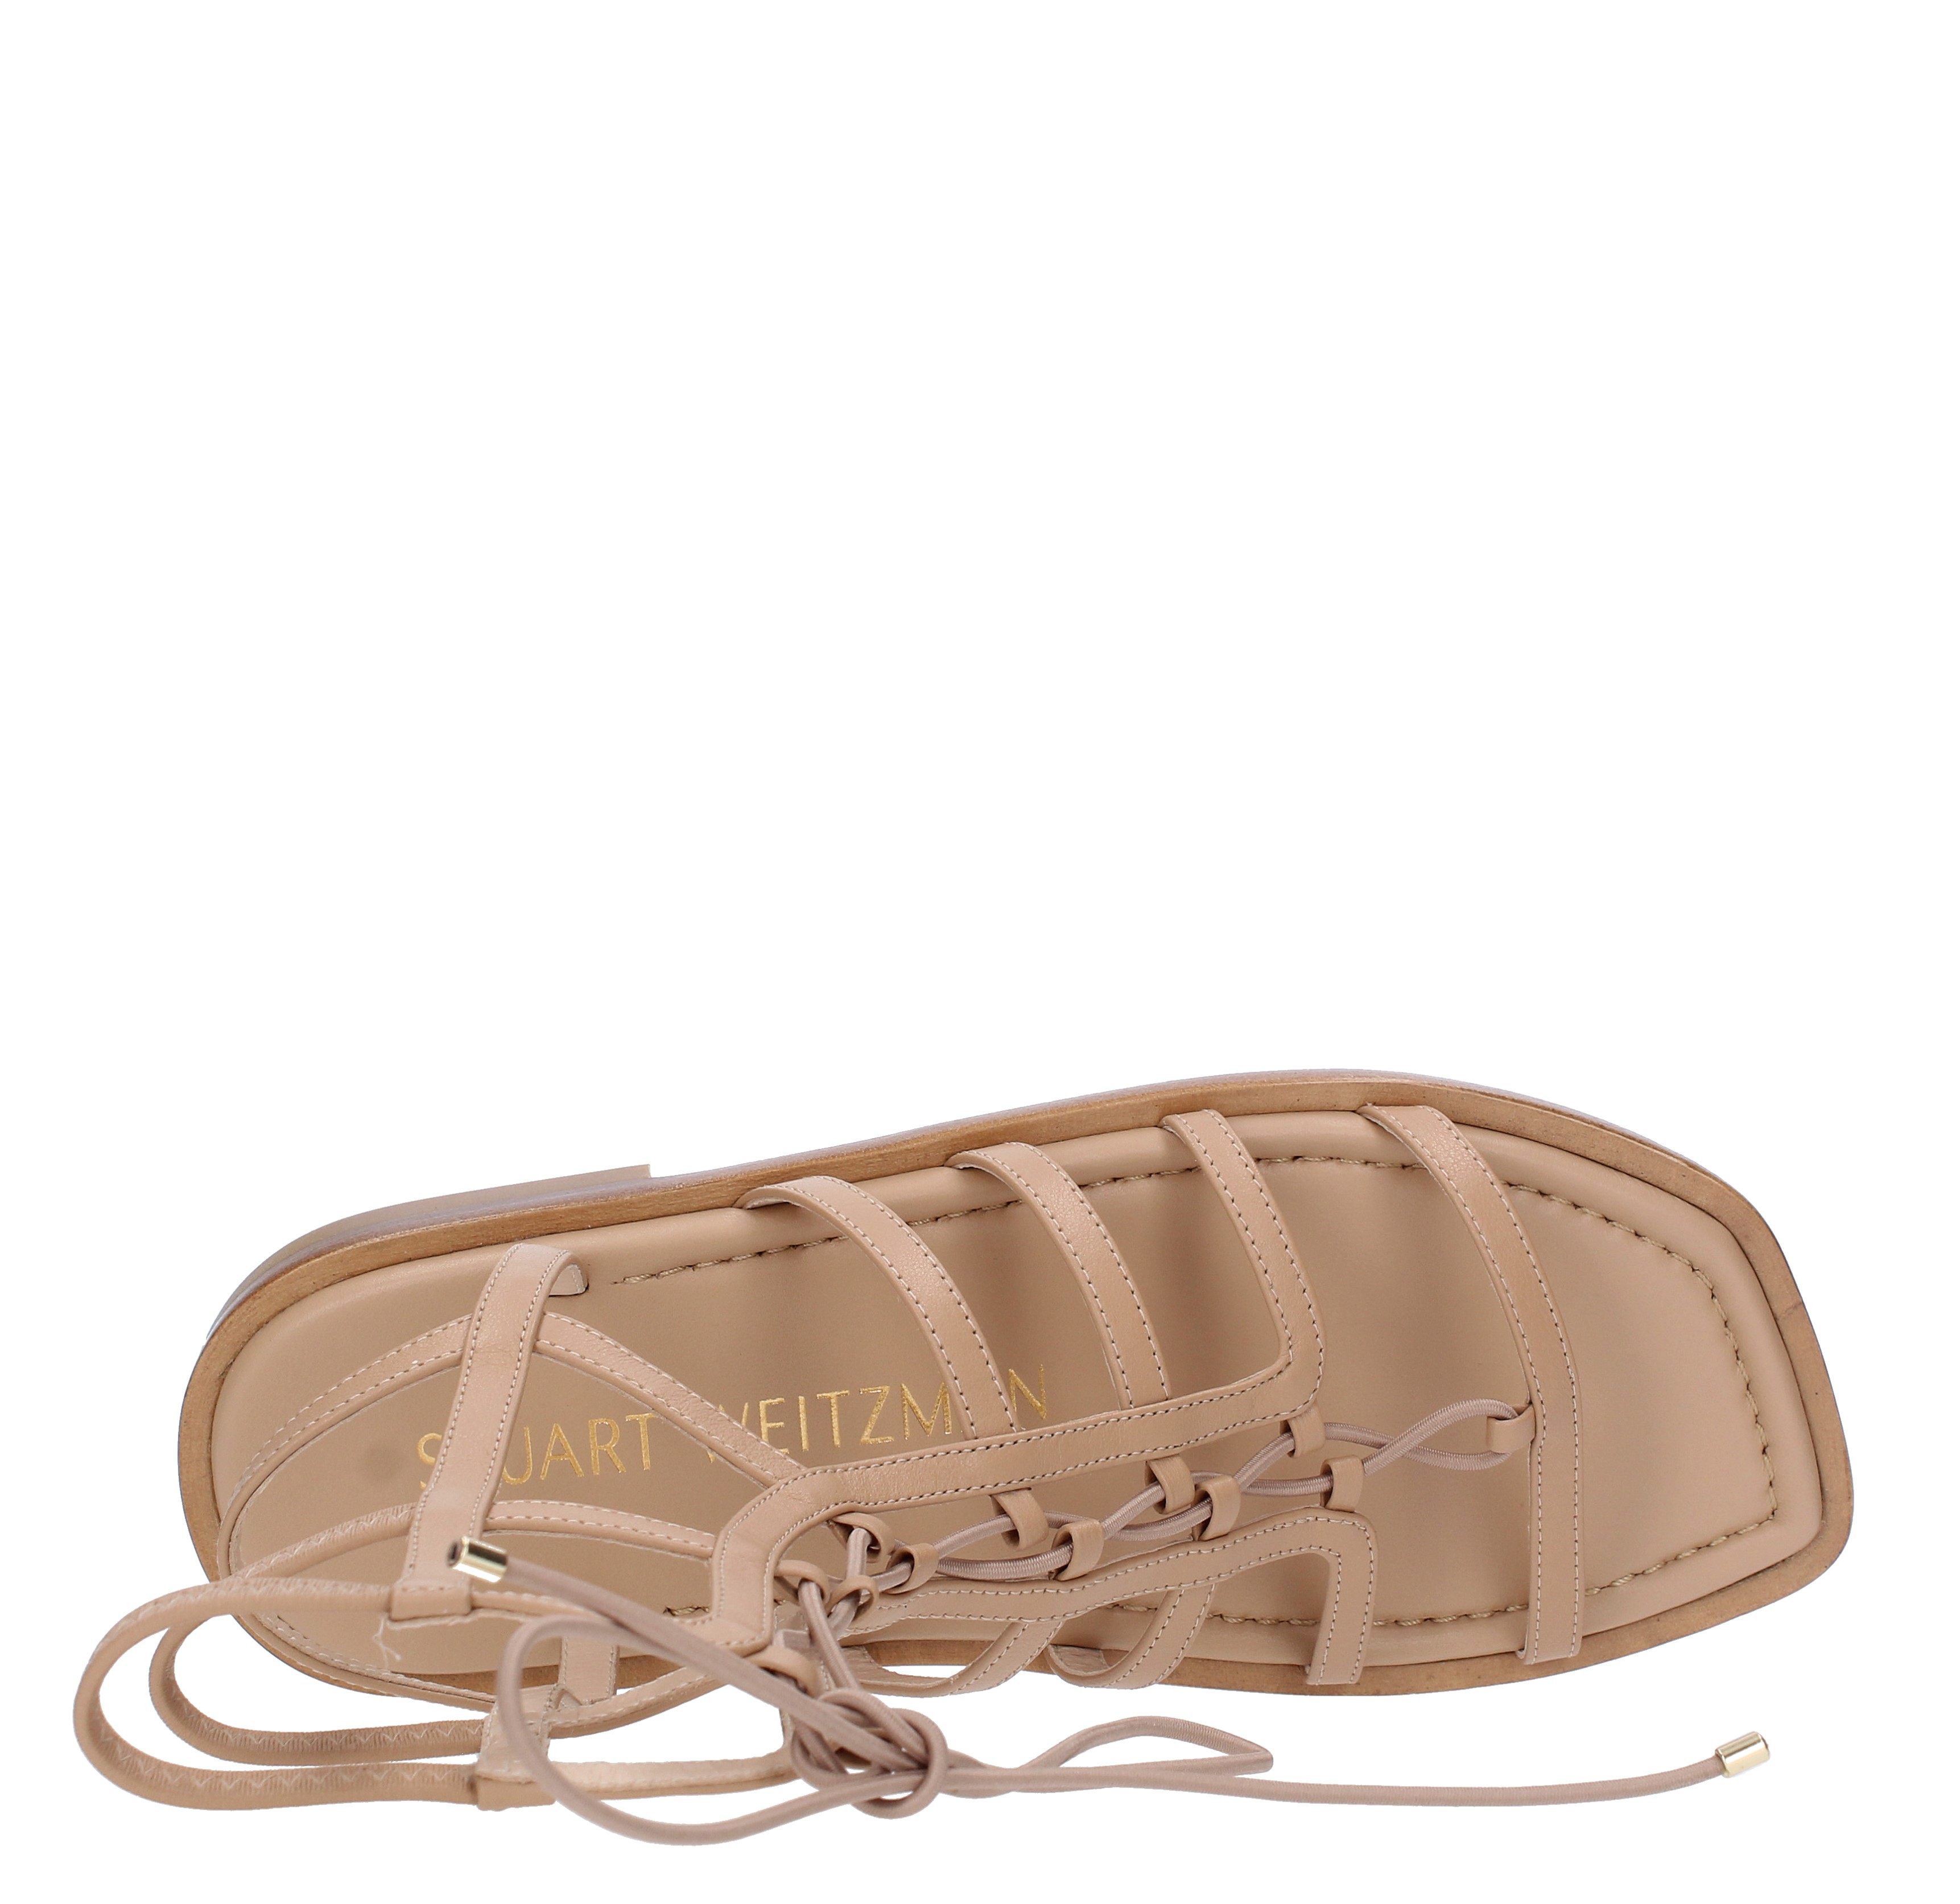 Sandali in pelle alla schiava - STUART WEITZMAN - Ginevra calzature